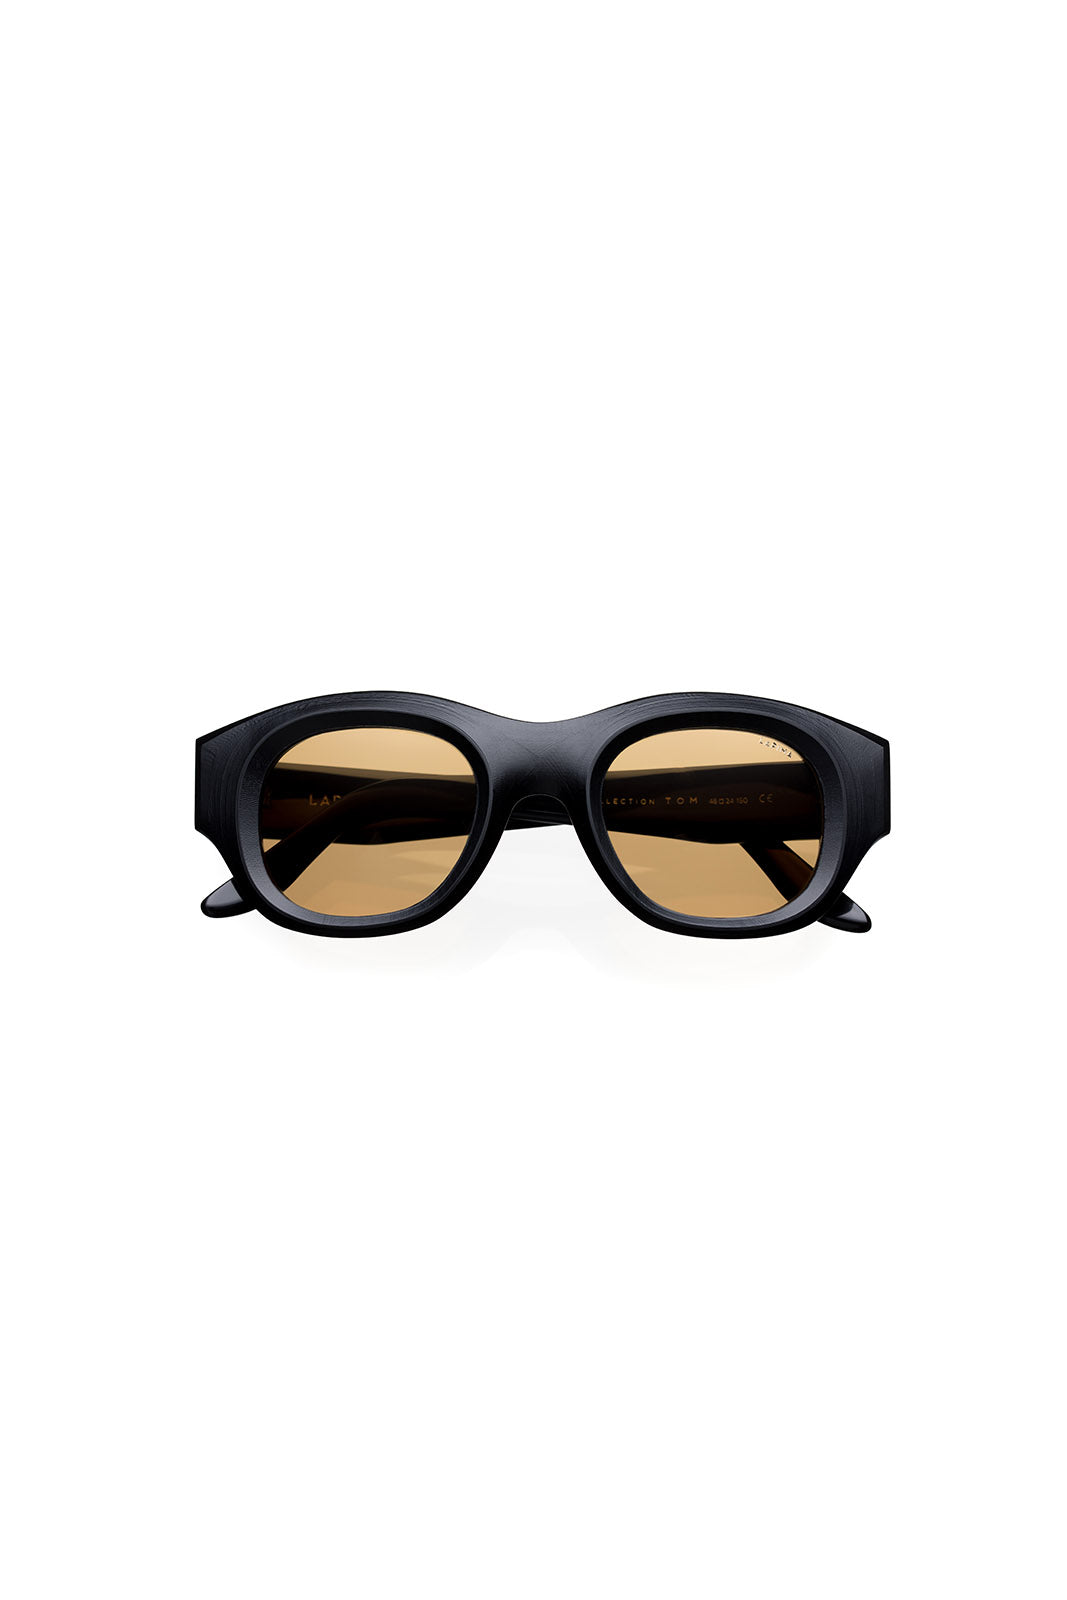 Lapima-Tom-black-vnitage-sunglasses-amarees